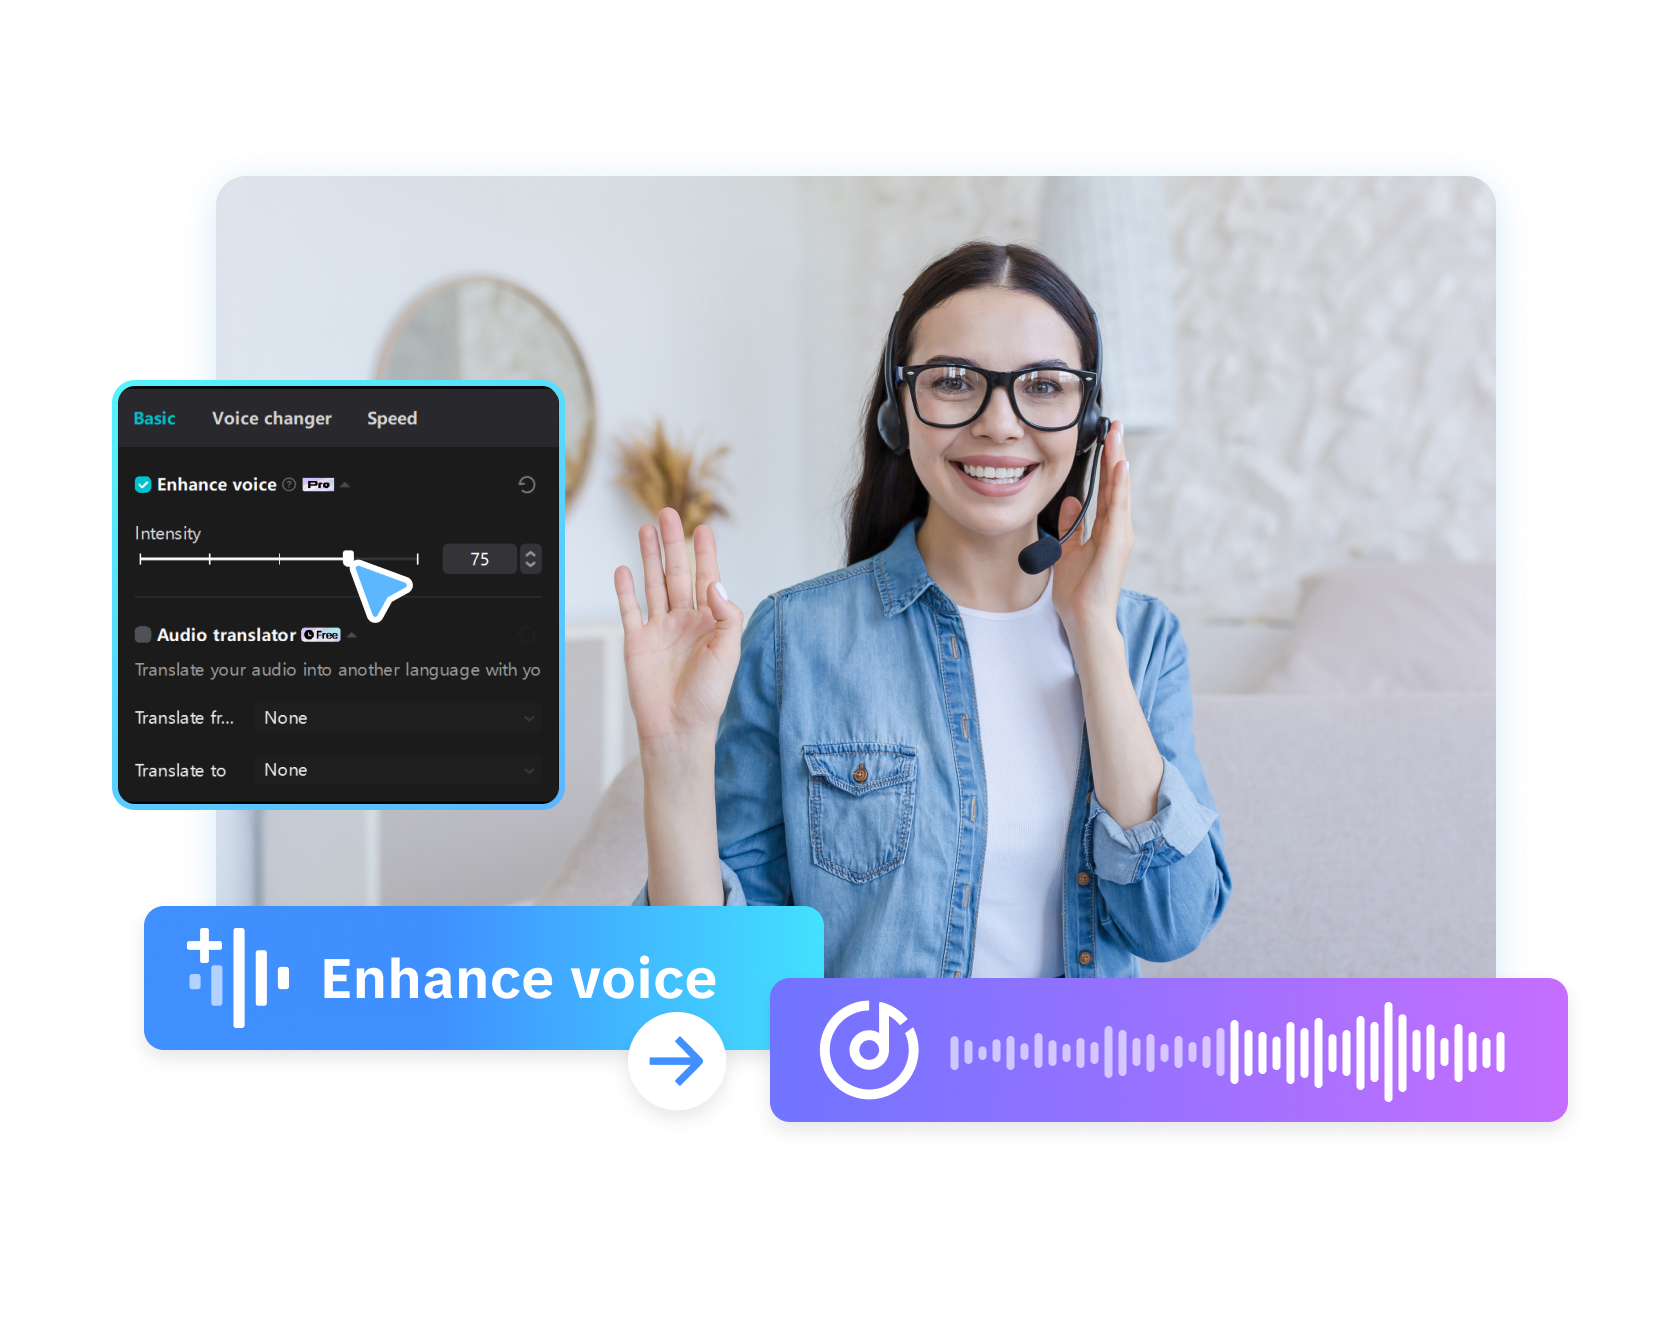 Desbloqueie possibilidades de áudio com o Advanced Voice Enhancer